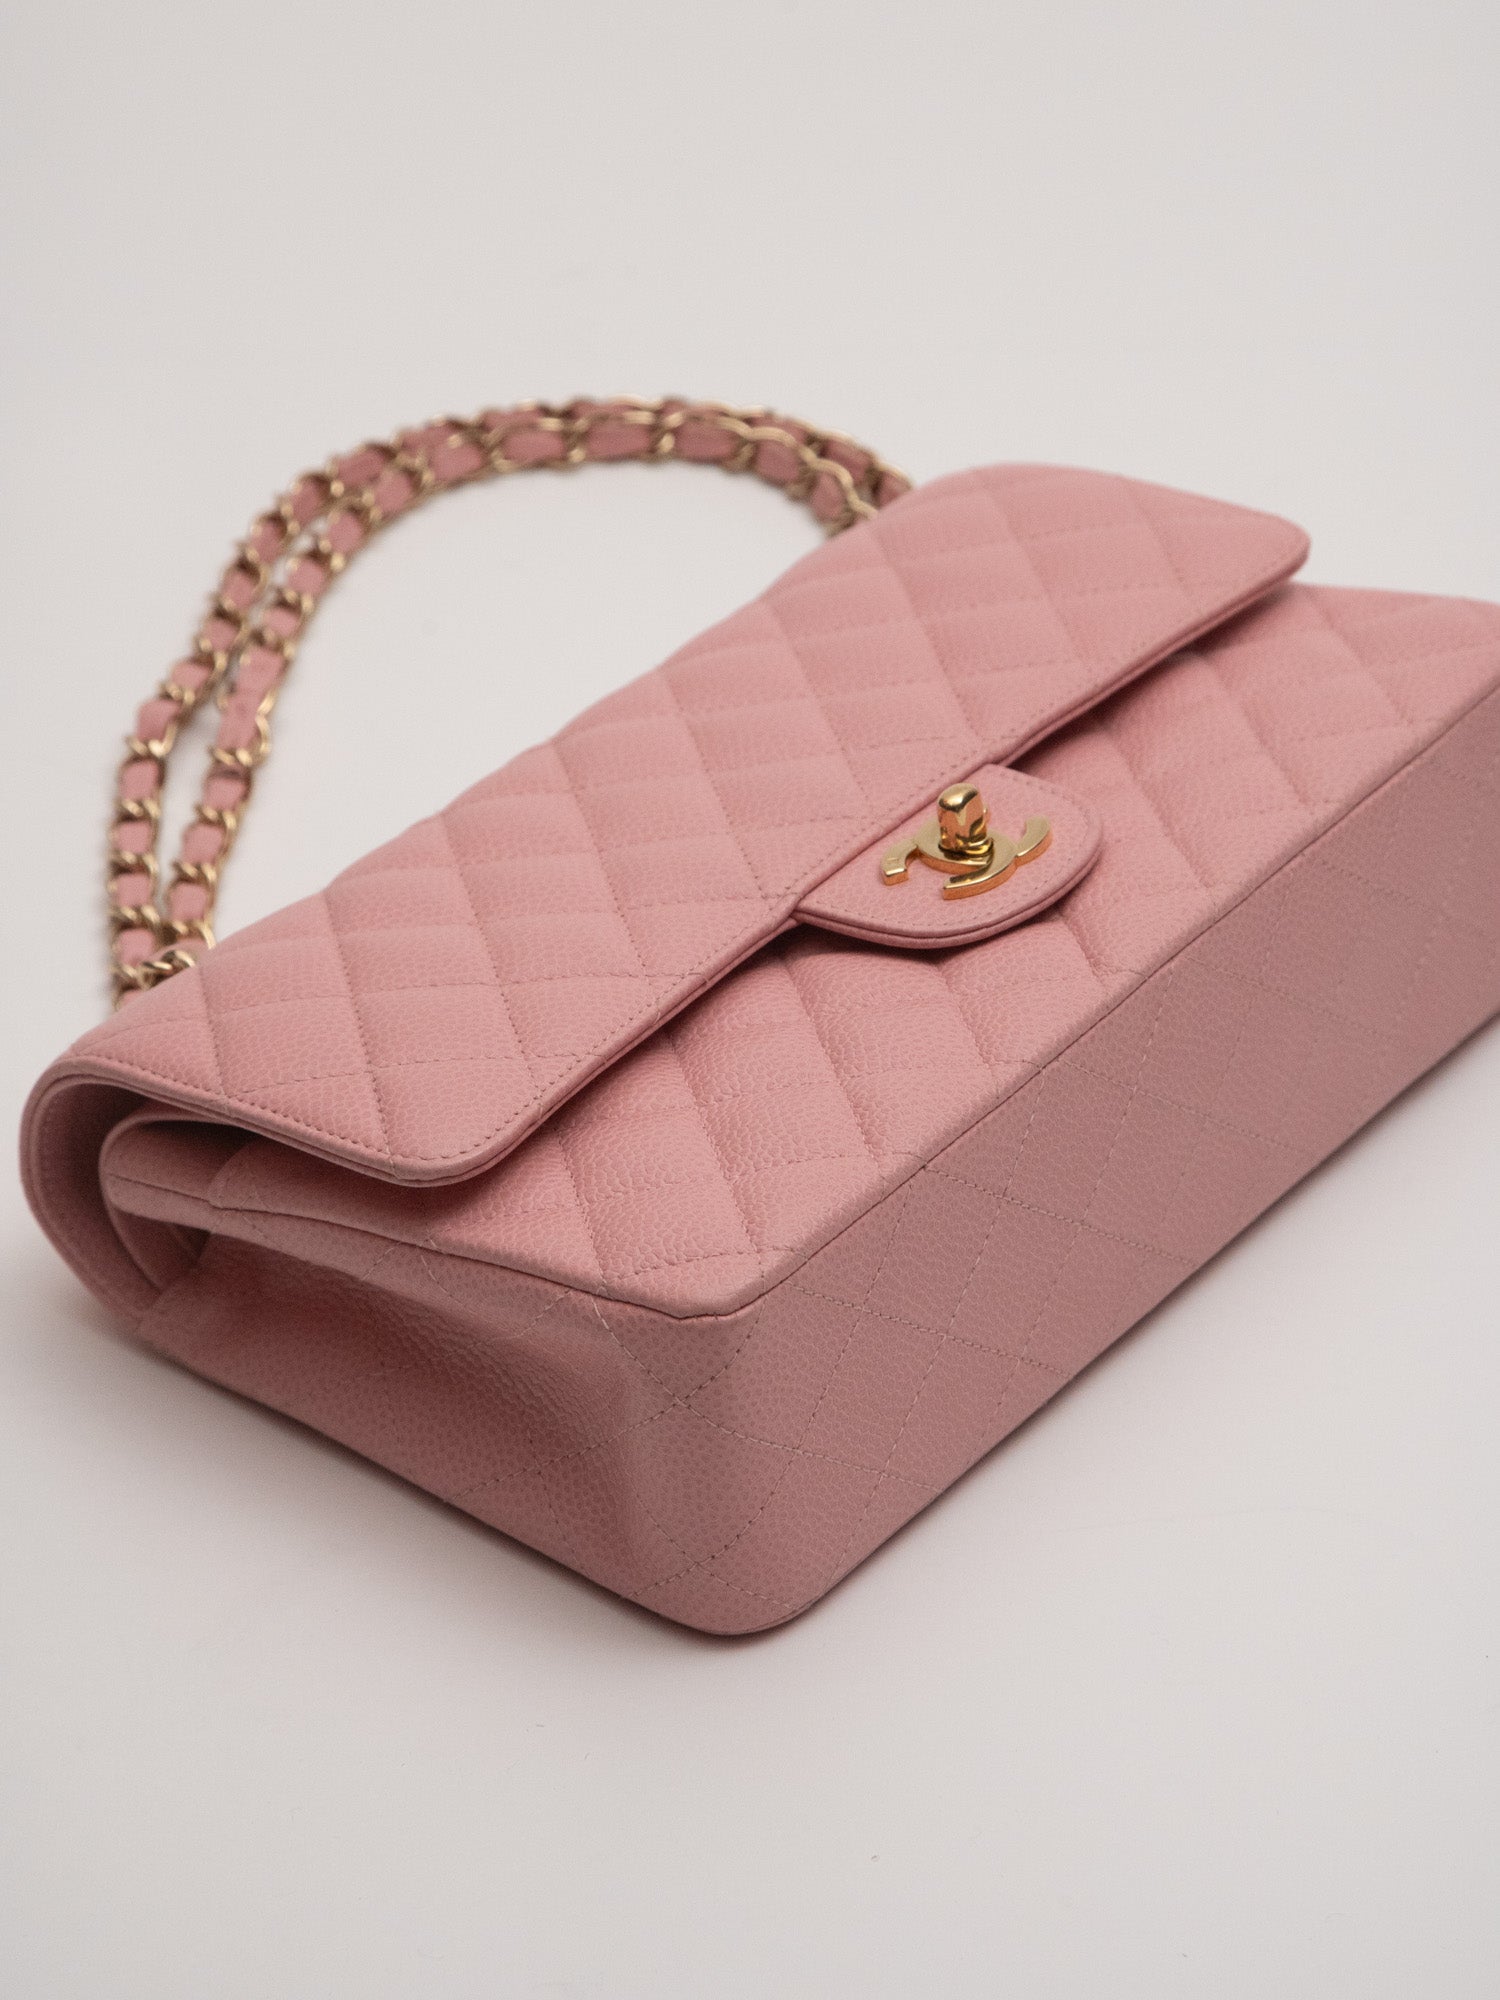 Vintage Chanel Pink Shoulder Bag